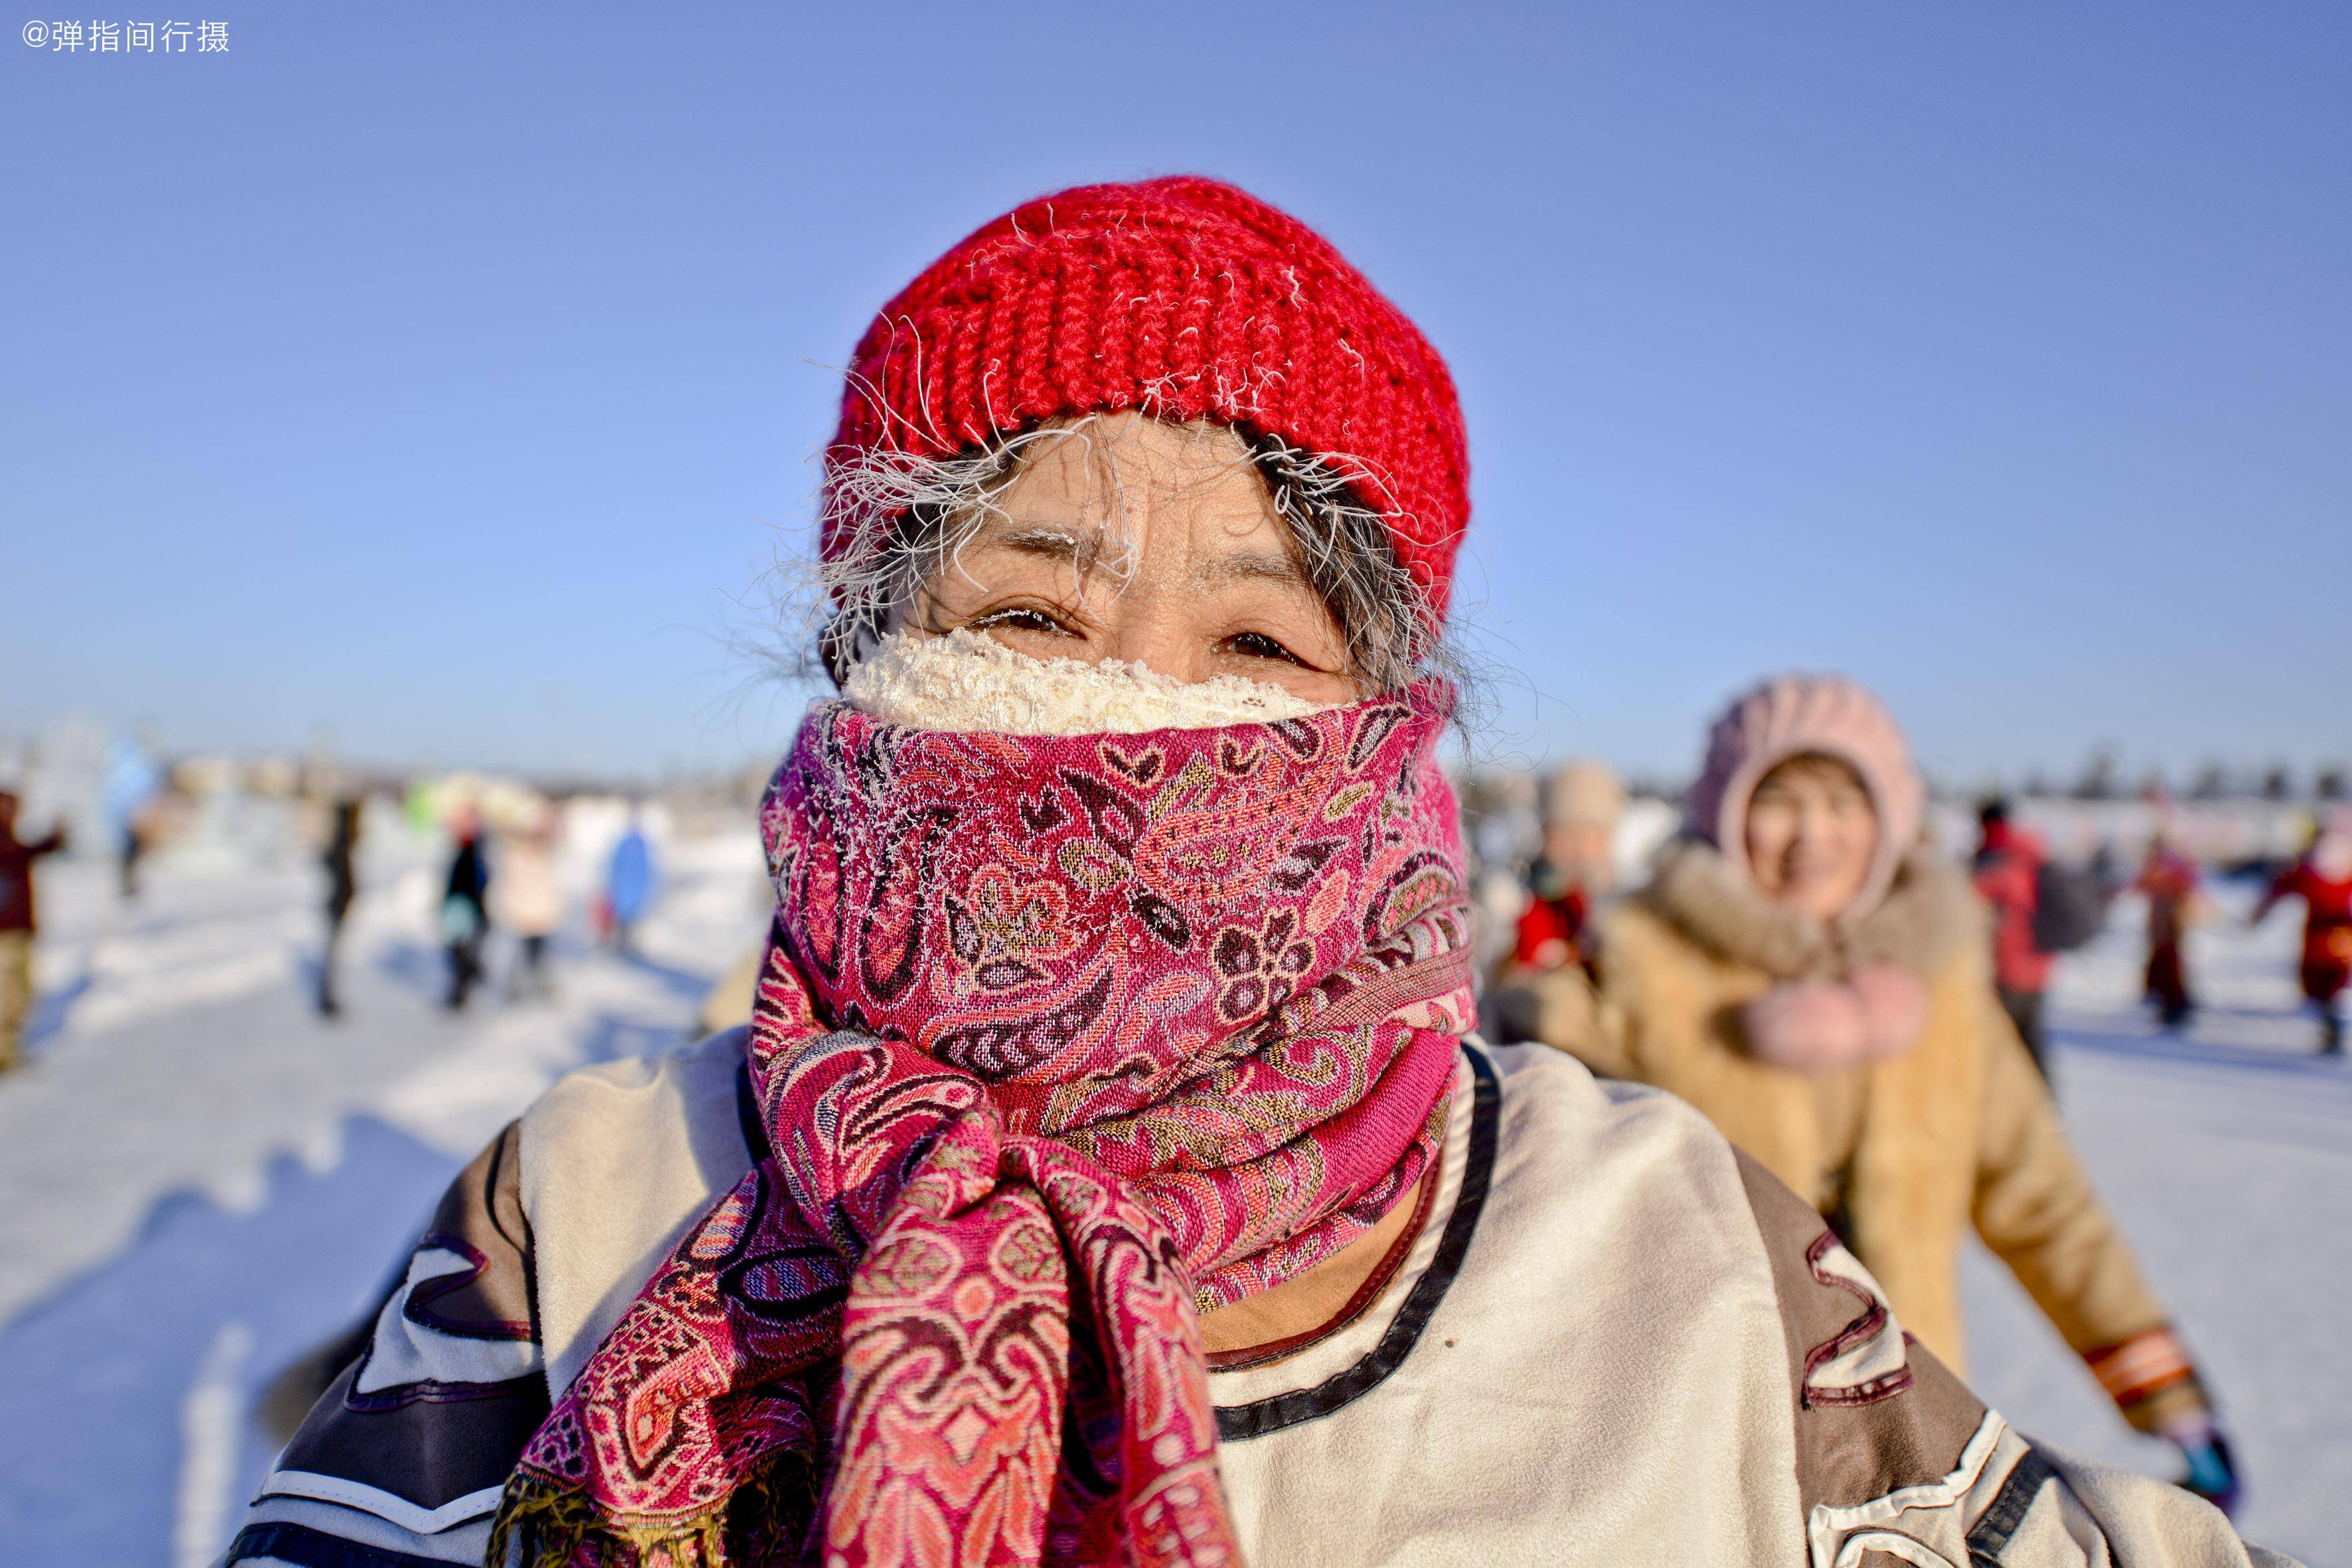 呼伦贝尔大草原之“三少民族”《勇敢地鄂伦春》 - 中国国家地理最美观景拍摄点